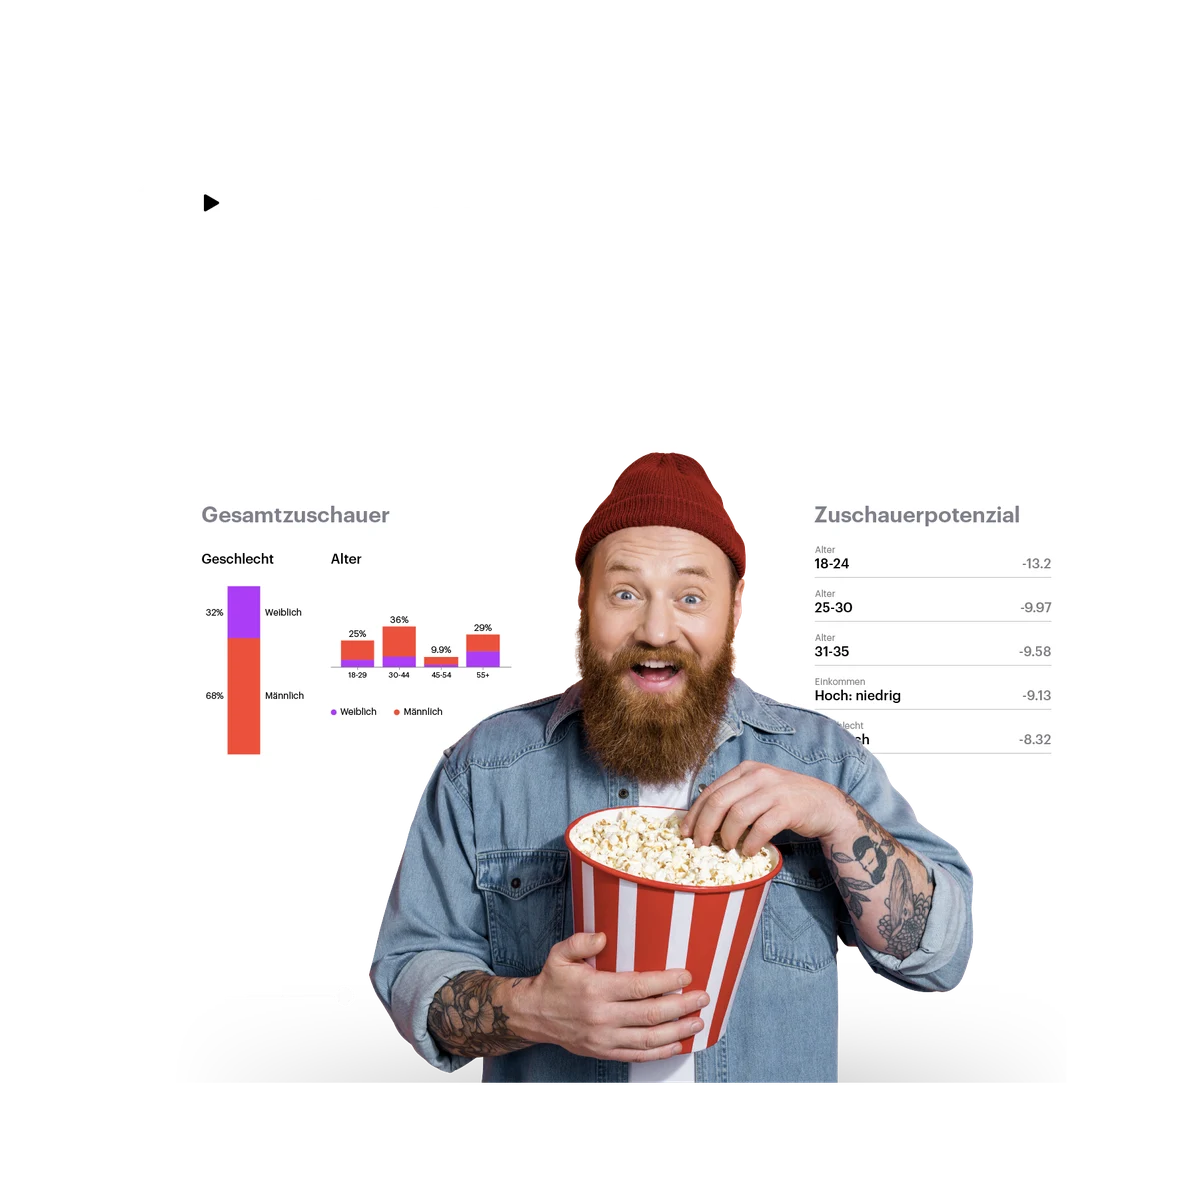 Mann mit Popcorn und TV-Insights im Hintergrund